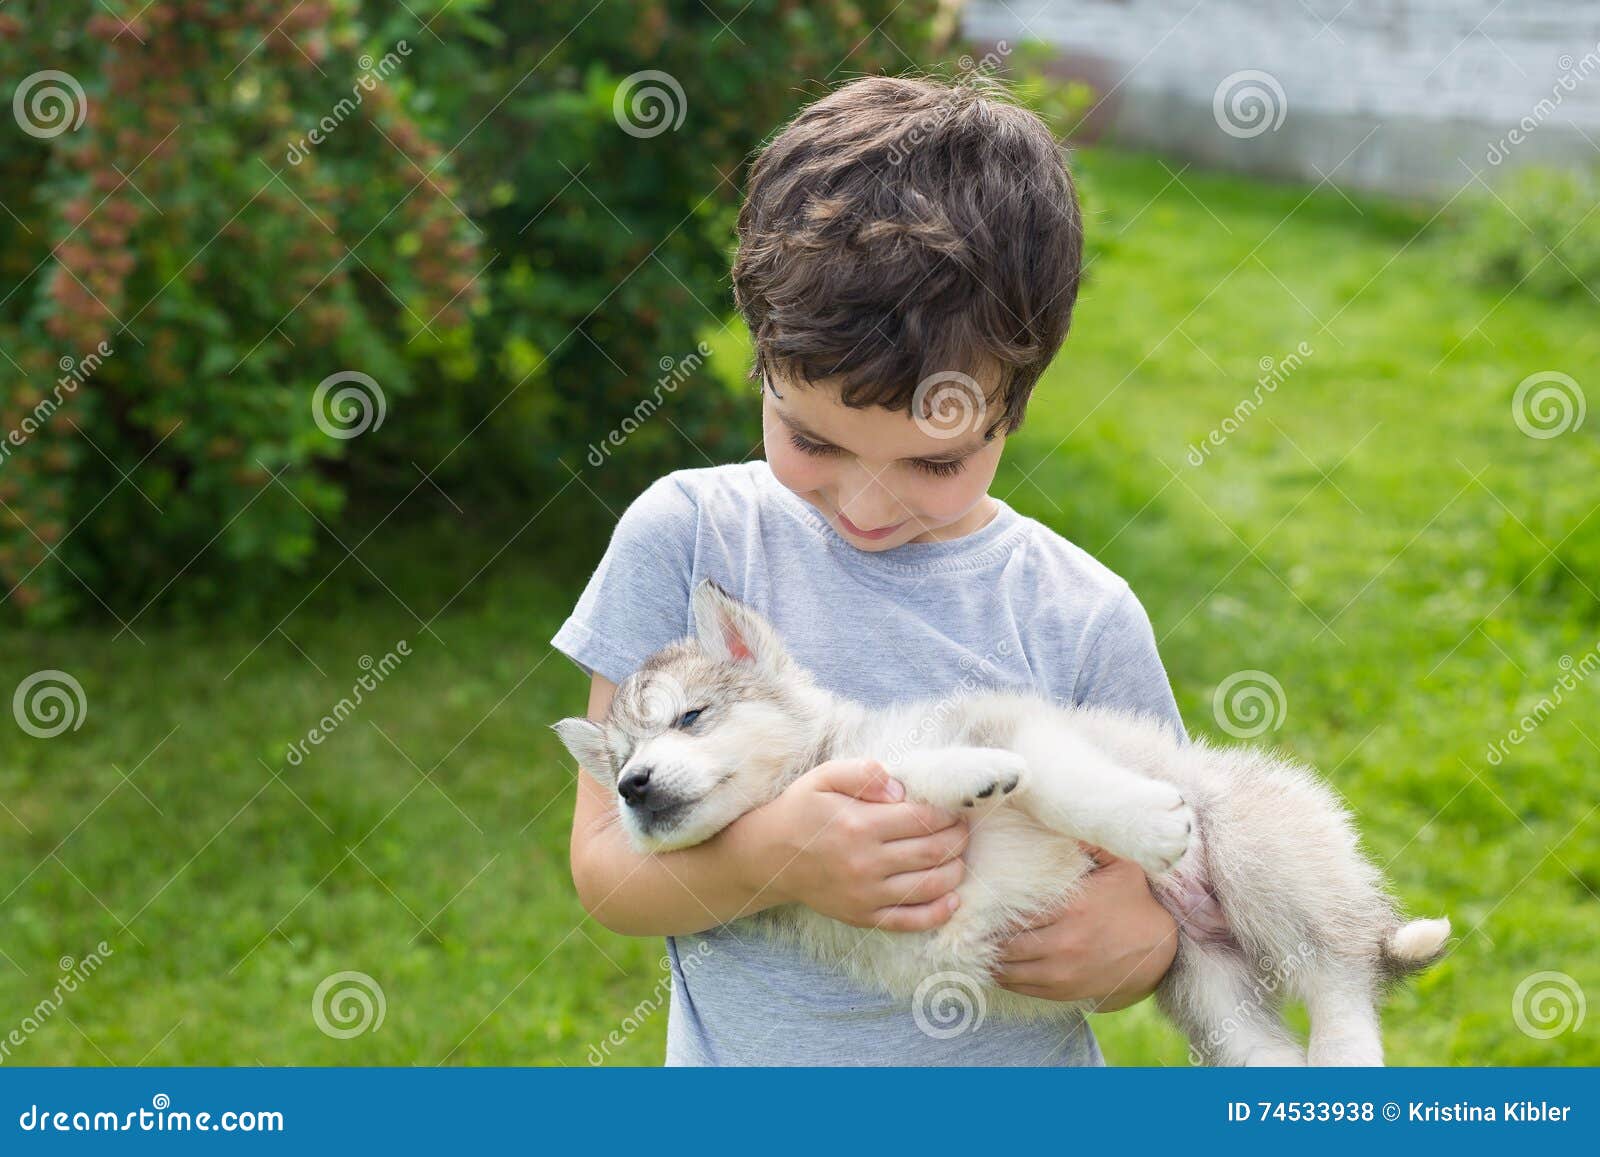 Мальчик держит собаку. Мальчик держит собаку на руках. Щенок на руках. Щенок на руках у ребенка. Мальчик с щенком в руках.